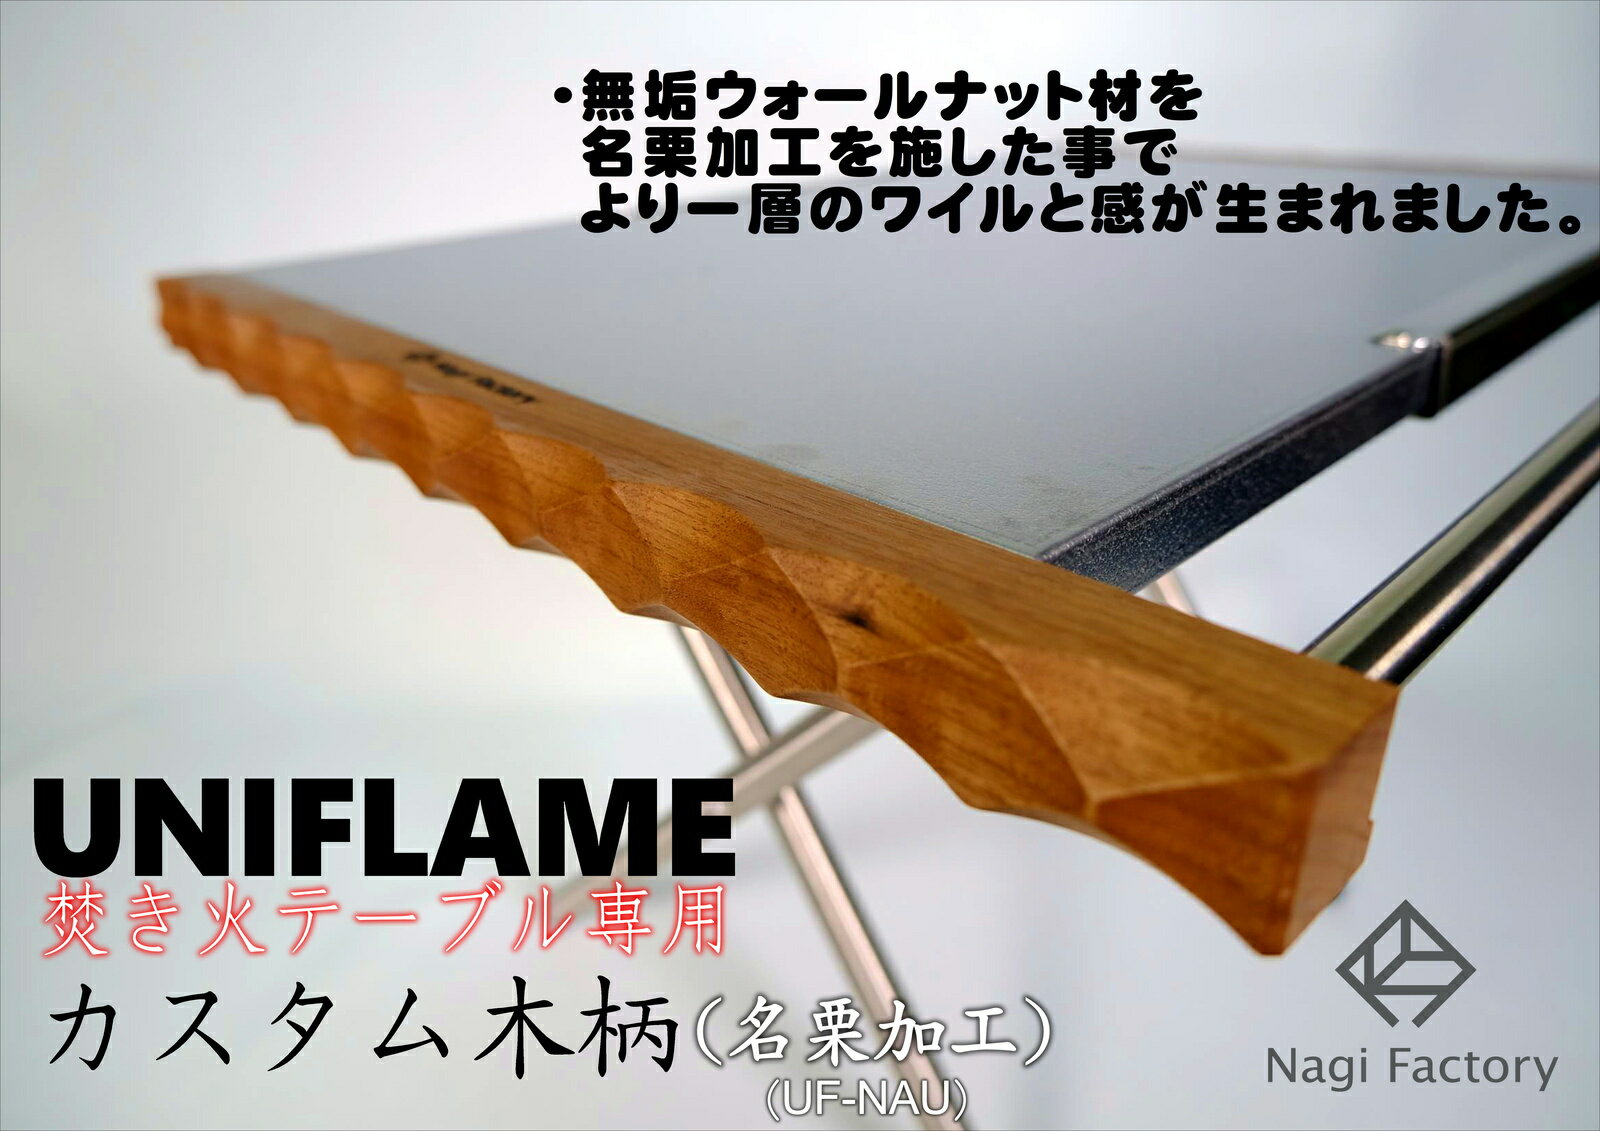 凪ファクトリー ユニフレーム焚き火テーブル専用カスタム木柄